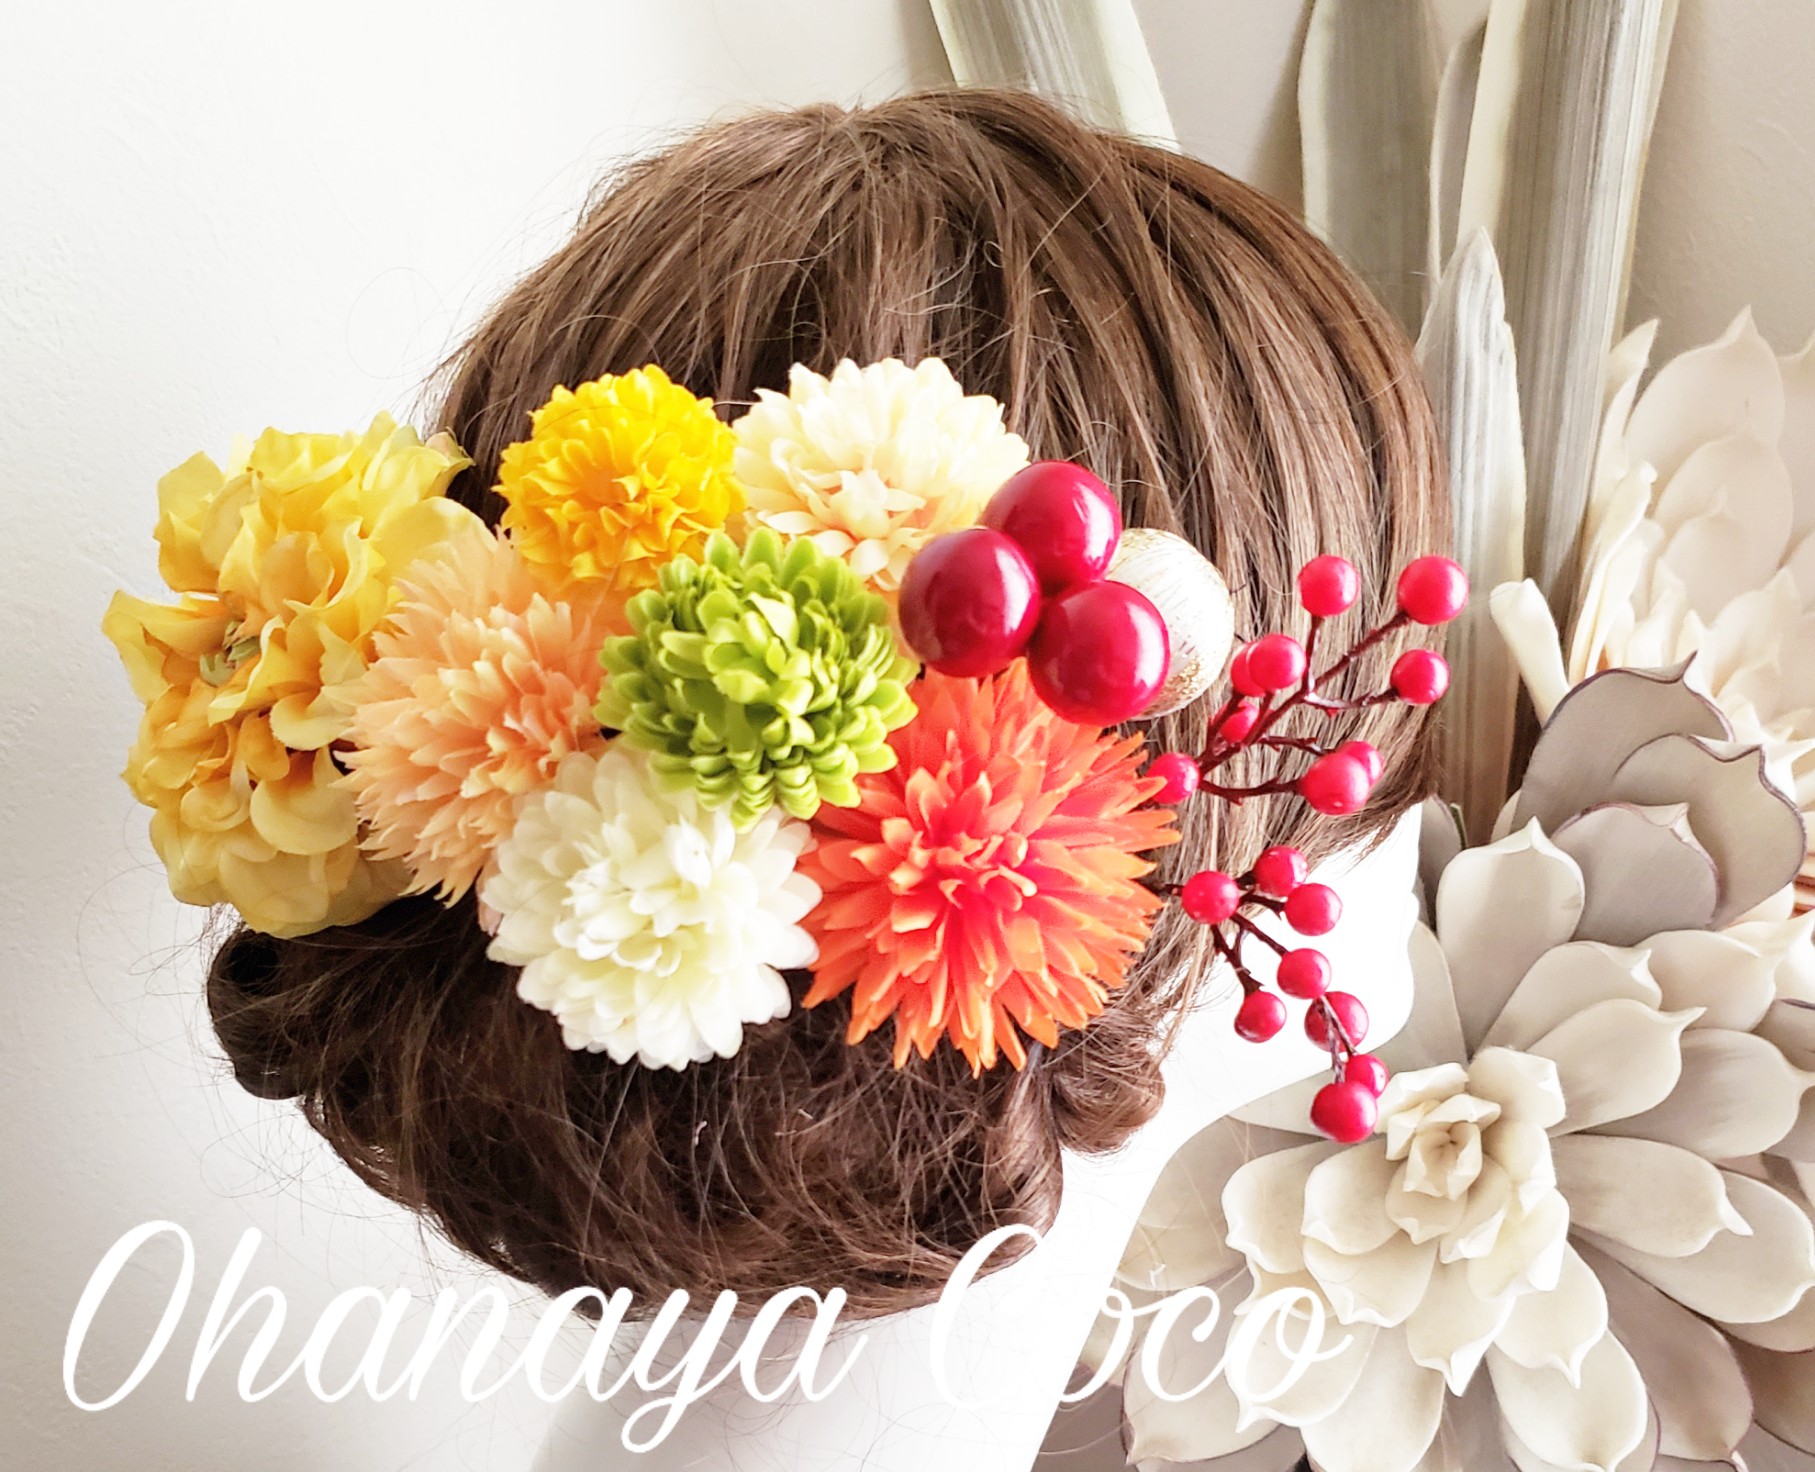 花kirari マスタード色のダリアとマムの髪飾り11点set No667 Iichi ハンドメイド クラフト作品 手仕事品の通販